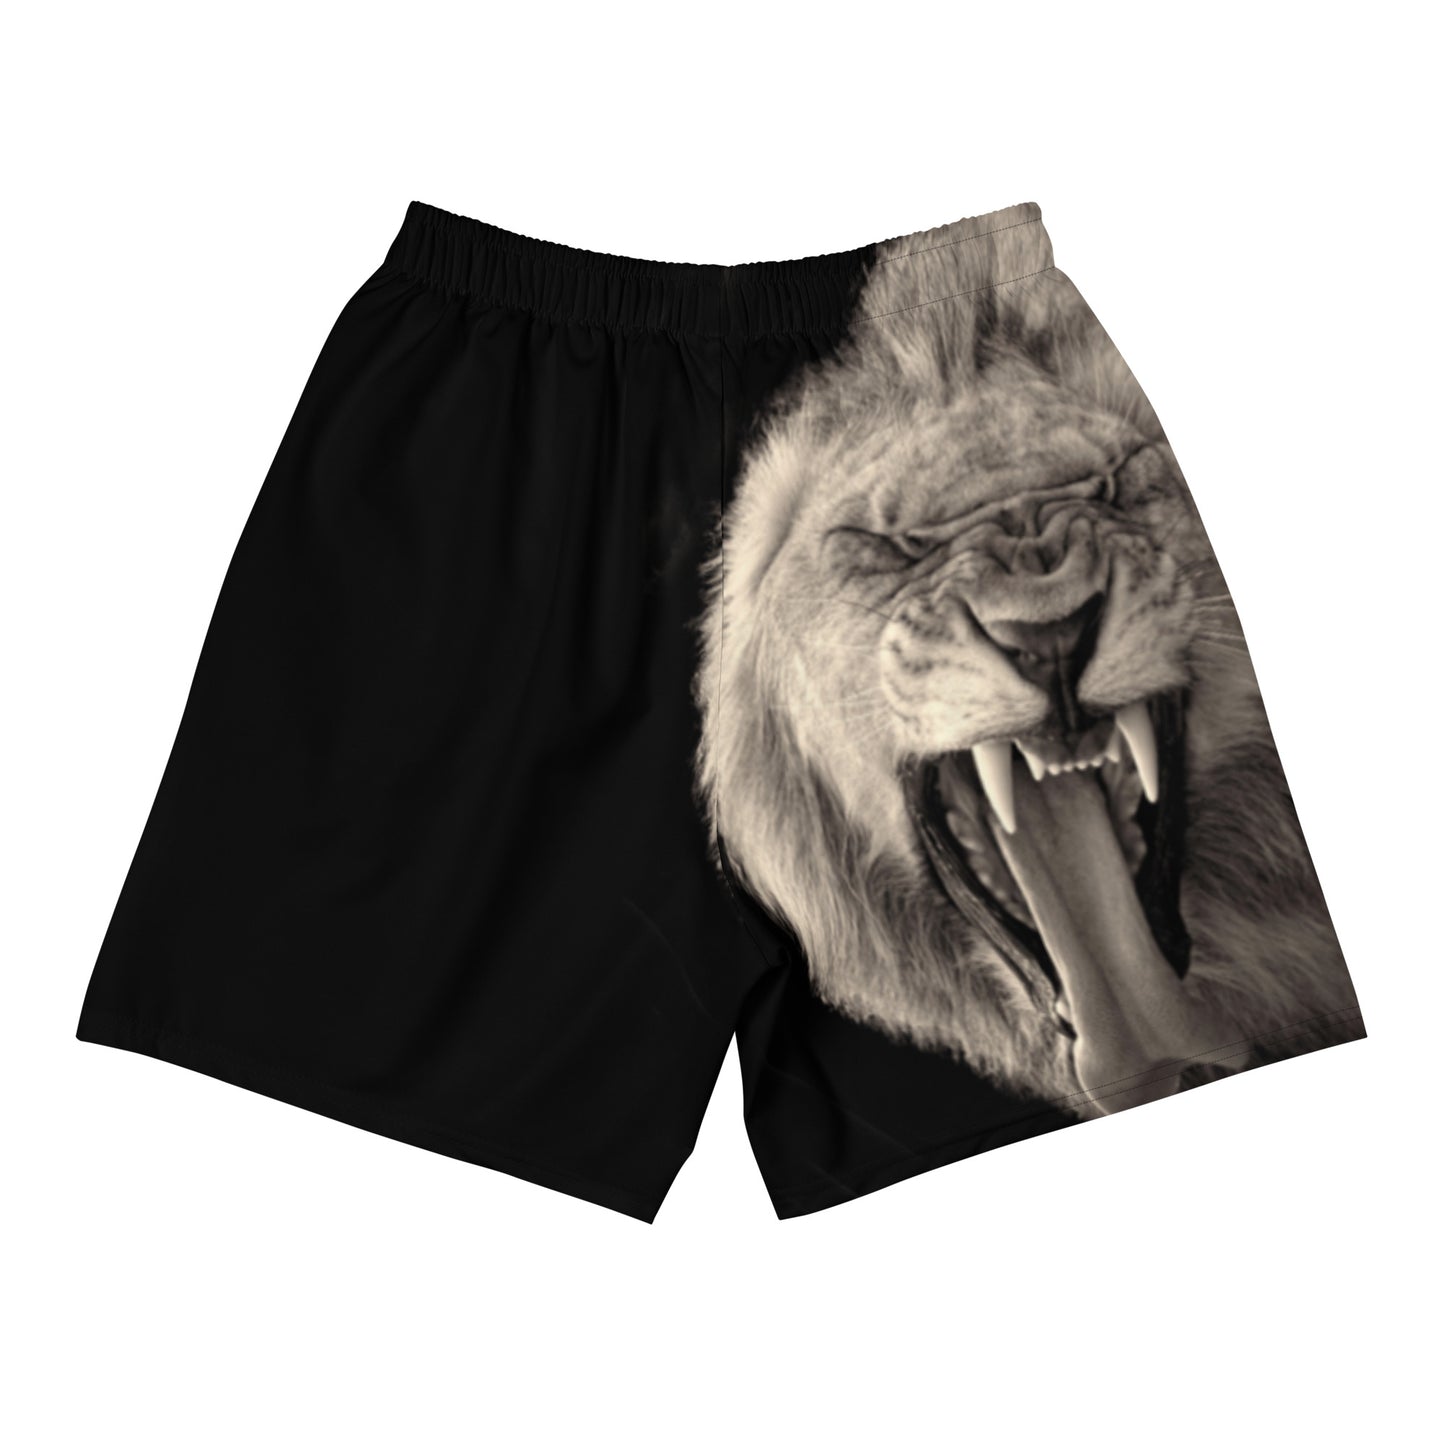 Yawning Lion shorts